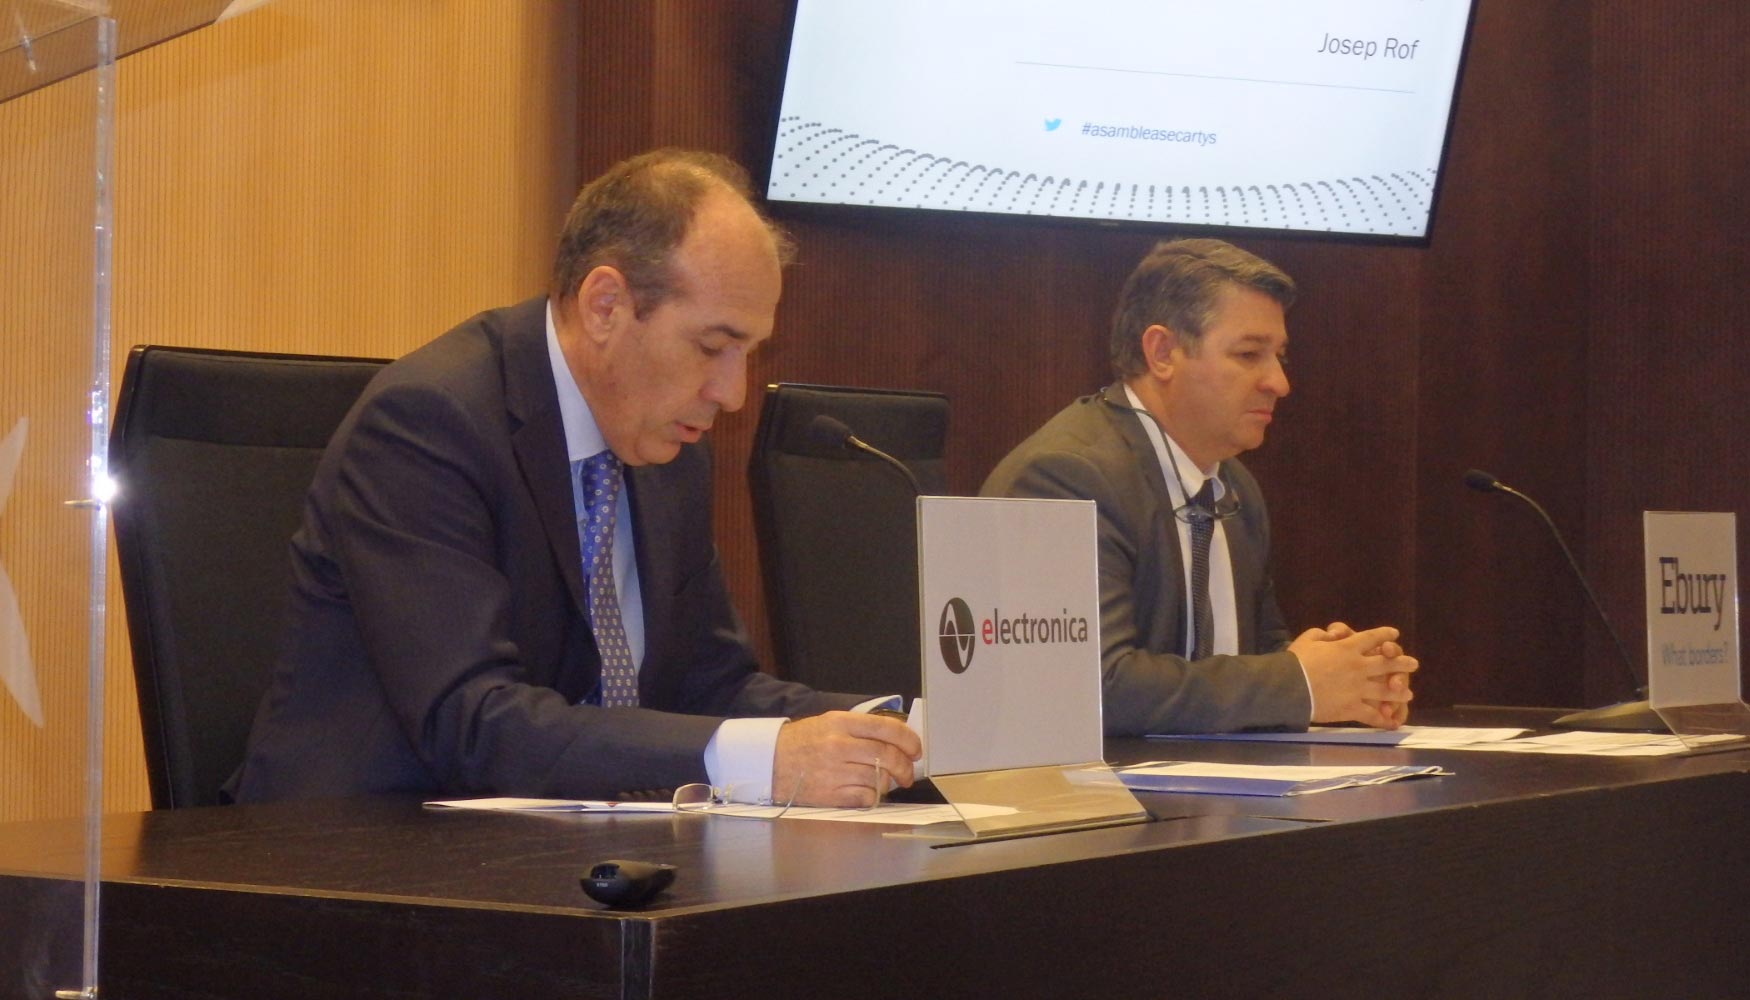 A la izquierda, Josep Rof, presidente de Secartys, junto a Ricard Snchez, Secretario General, en la apertura de la Asamblea General de la asociacin...